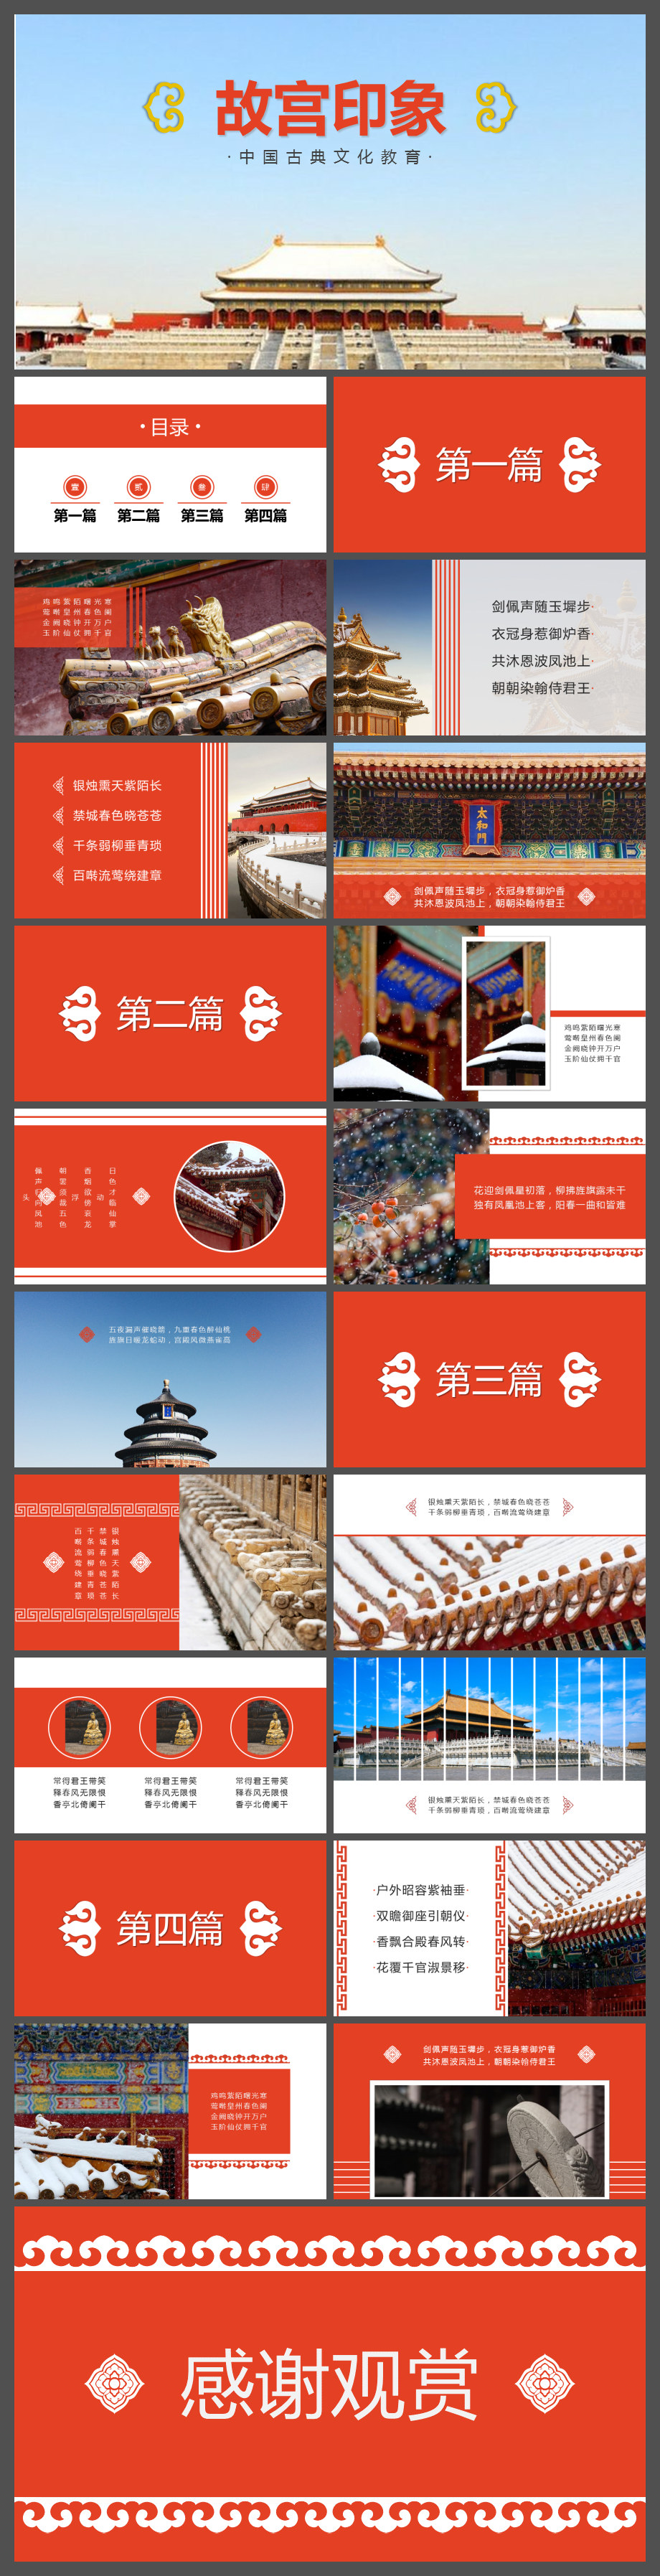 中国风故宫旅游PPT相册模板